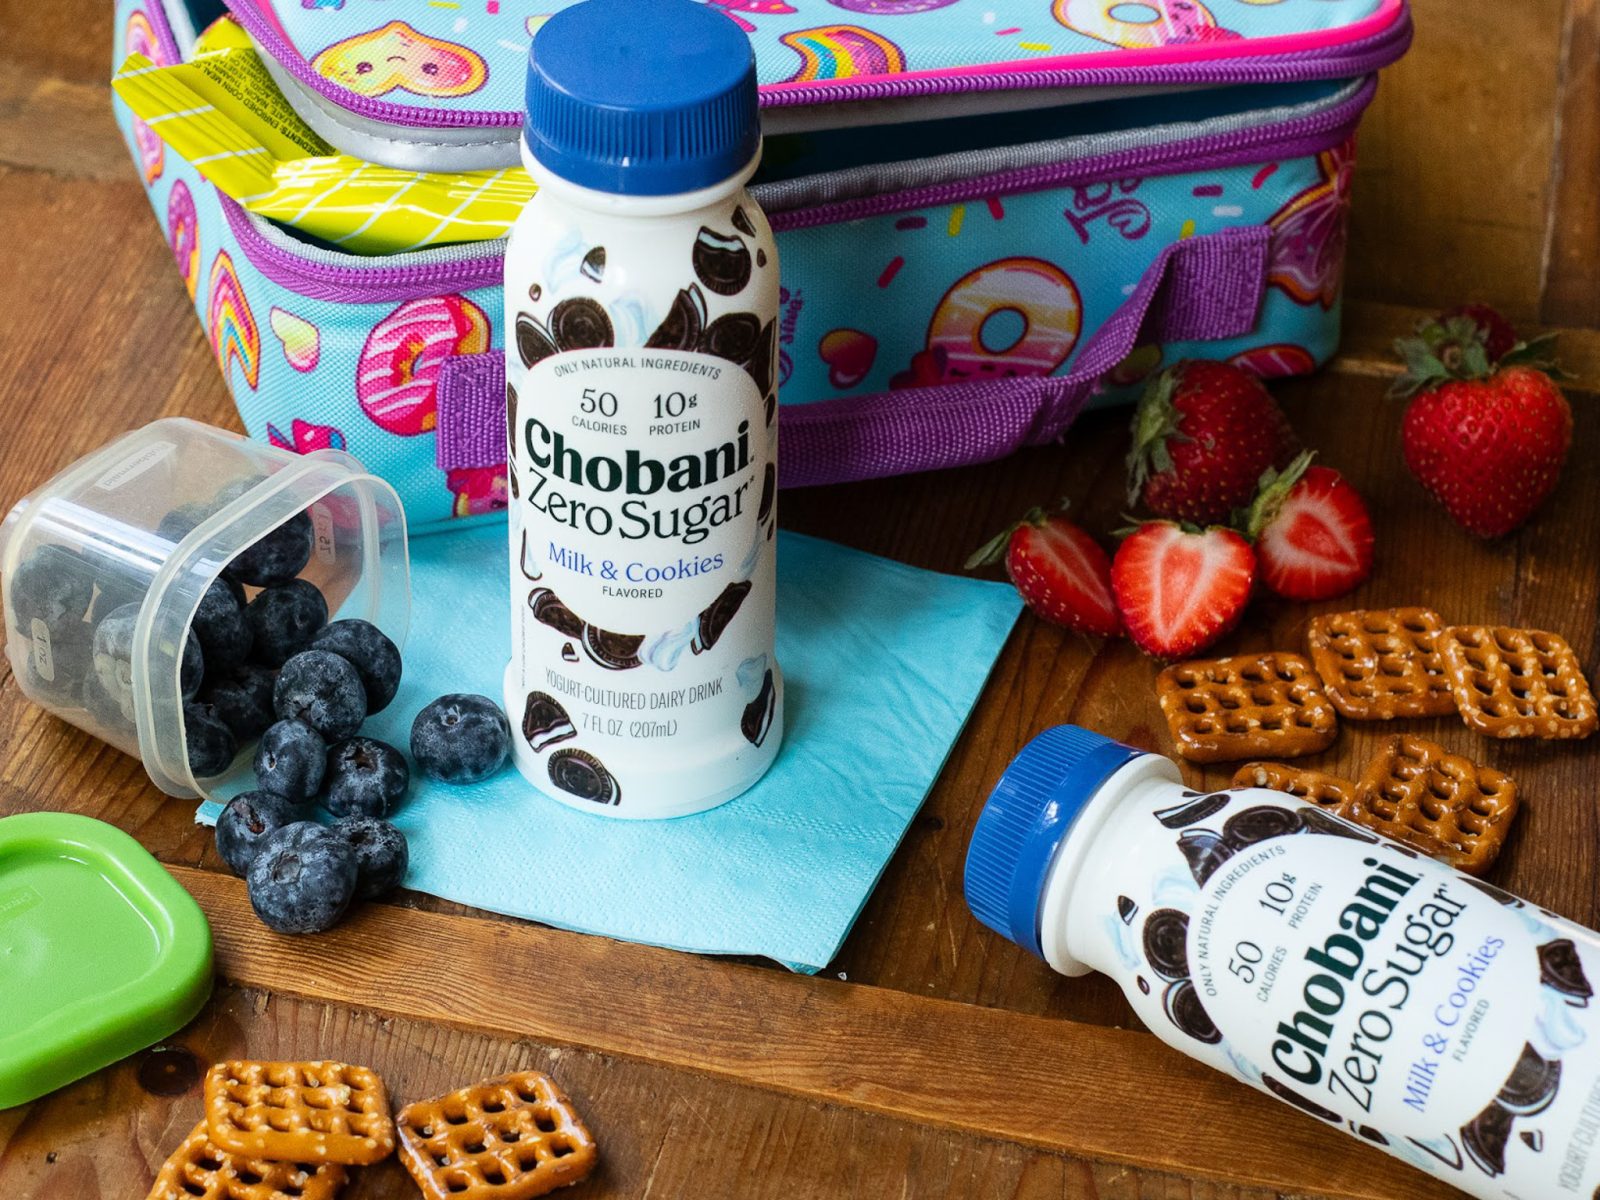 Get Chobani Zero Sugar Yogurt Drink As Low As 99¢ At Kroger (Regular Price $2.49)